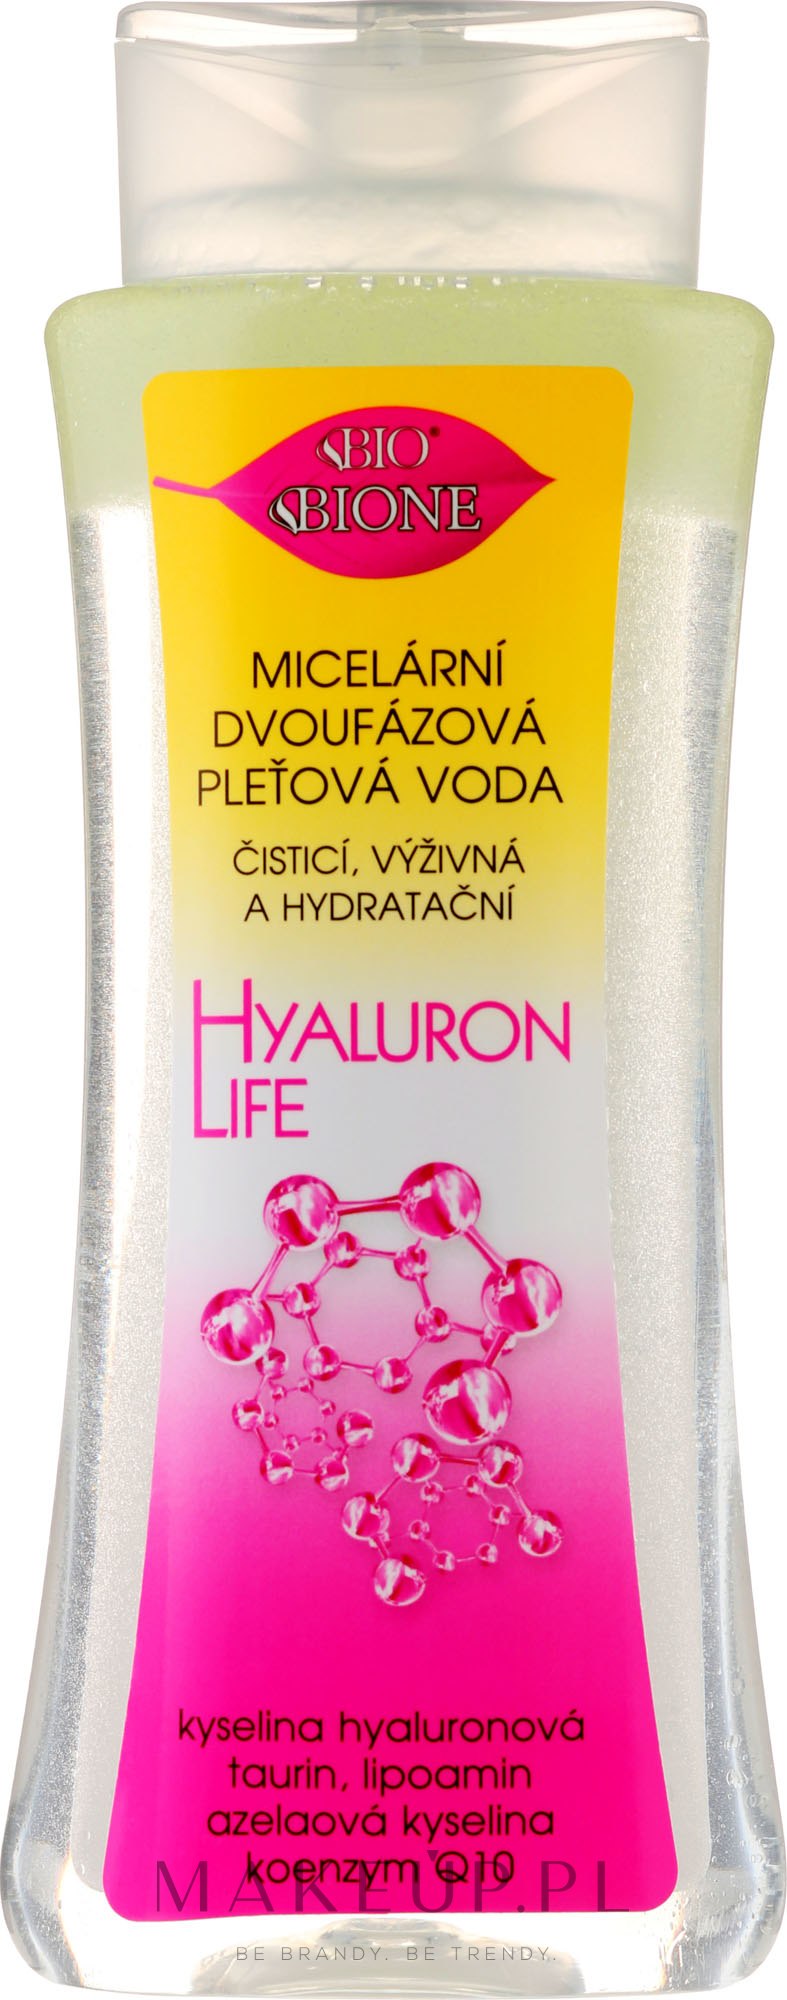 Dwufazowa woda micelarna z kwasem hialuronowym - Bione Cosmetics Hyaluron Life Two-Phase Micellar Water With Hyaluronic Acid — Zdjęcie 255 ml